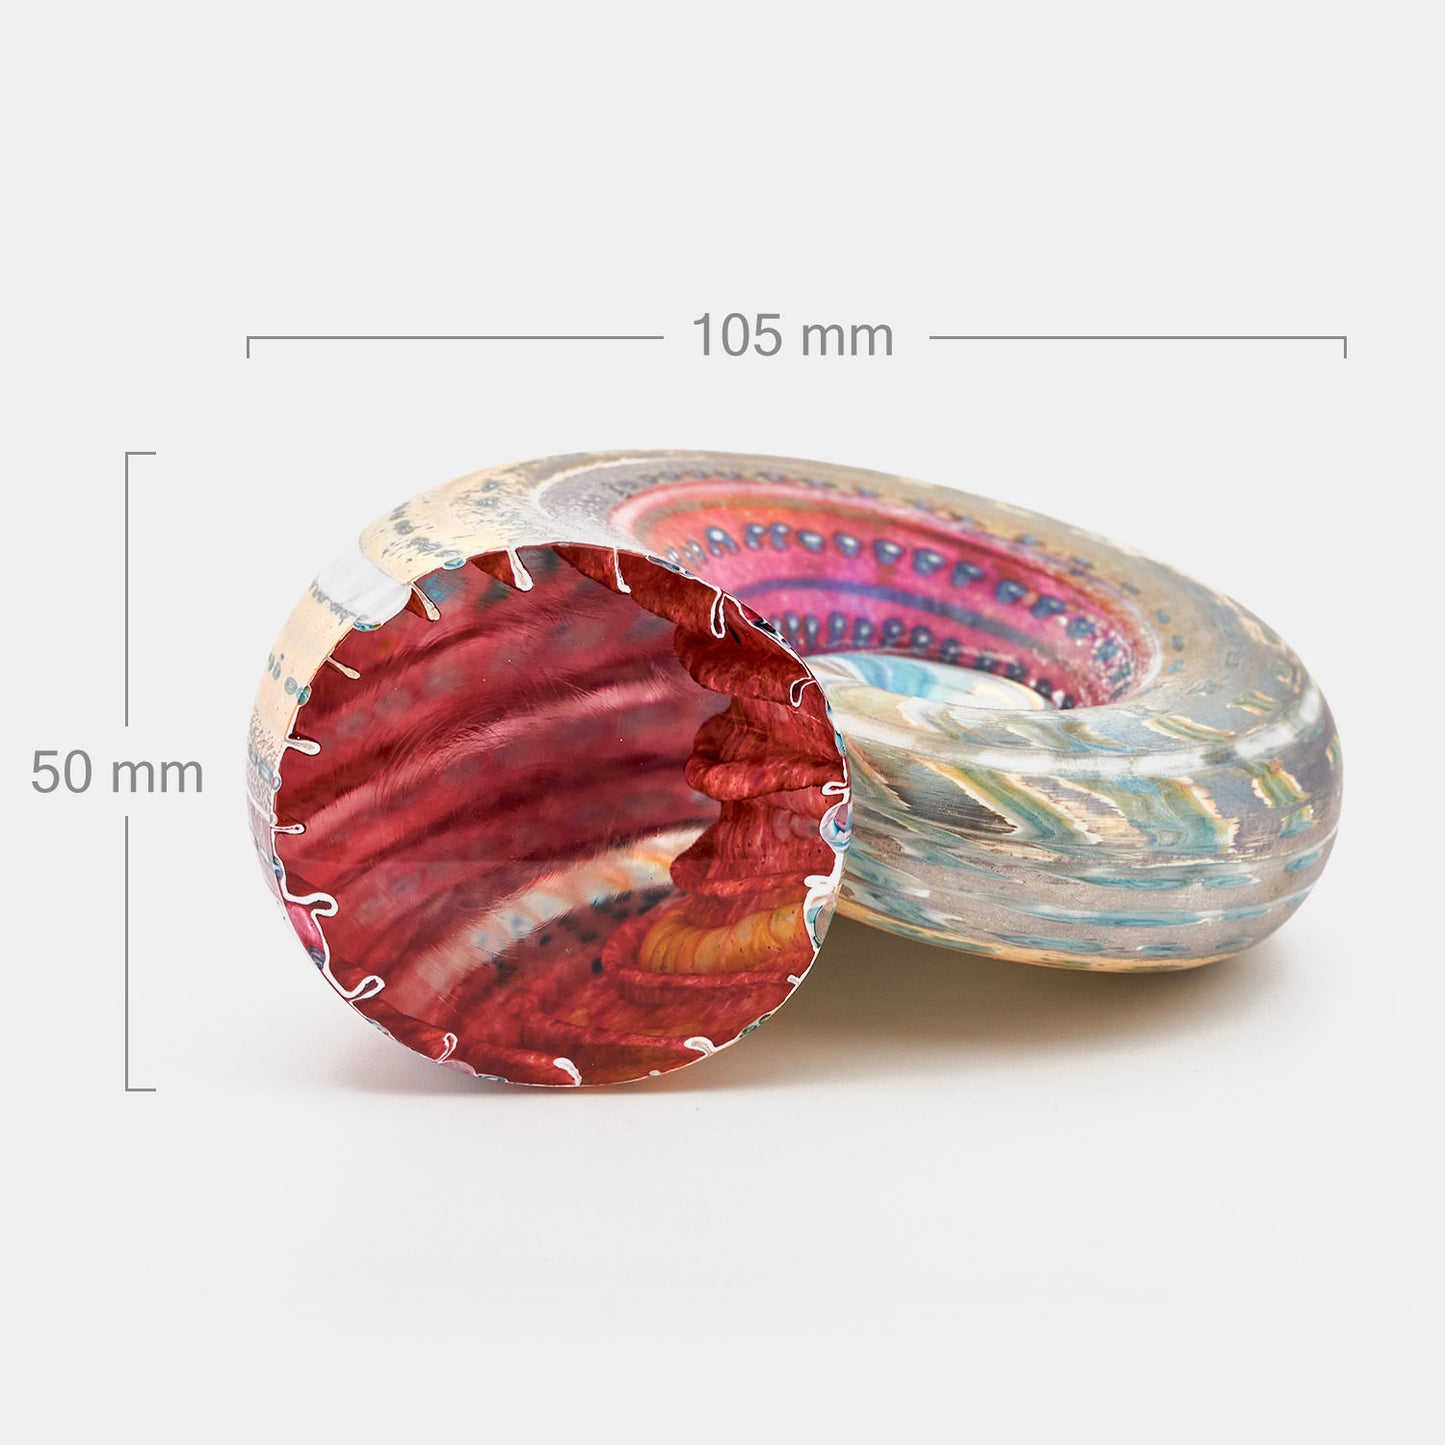 Iridised Ammonite Shells